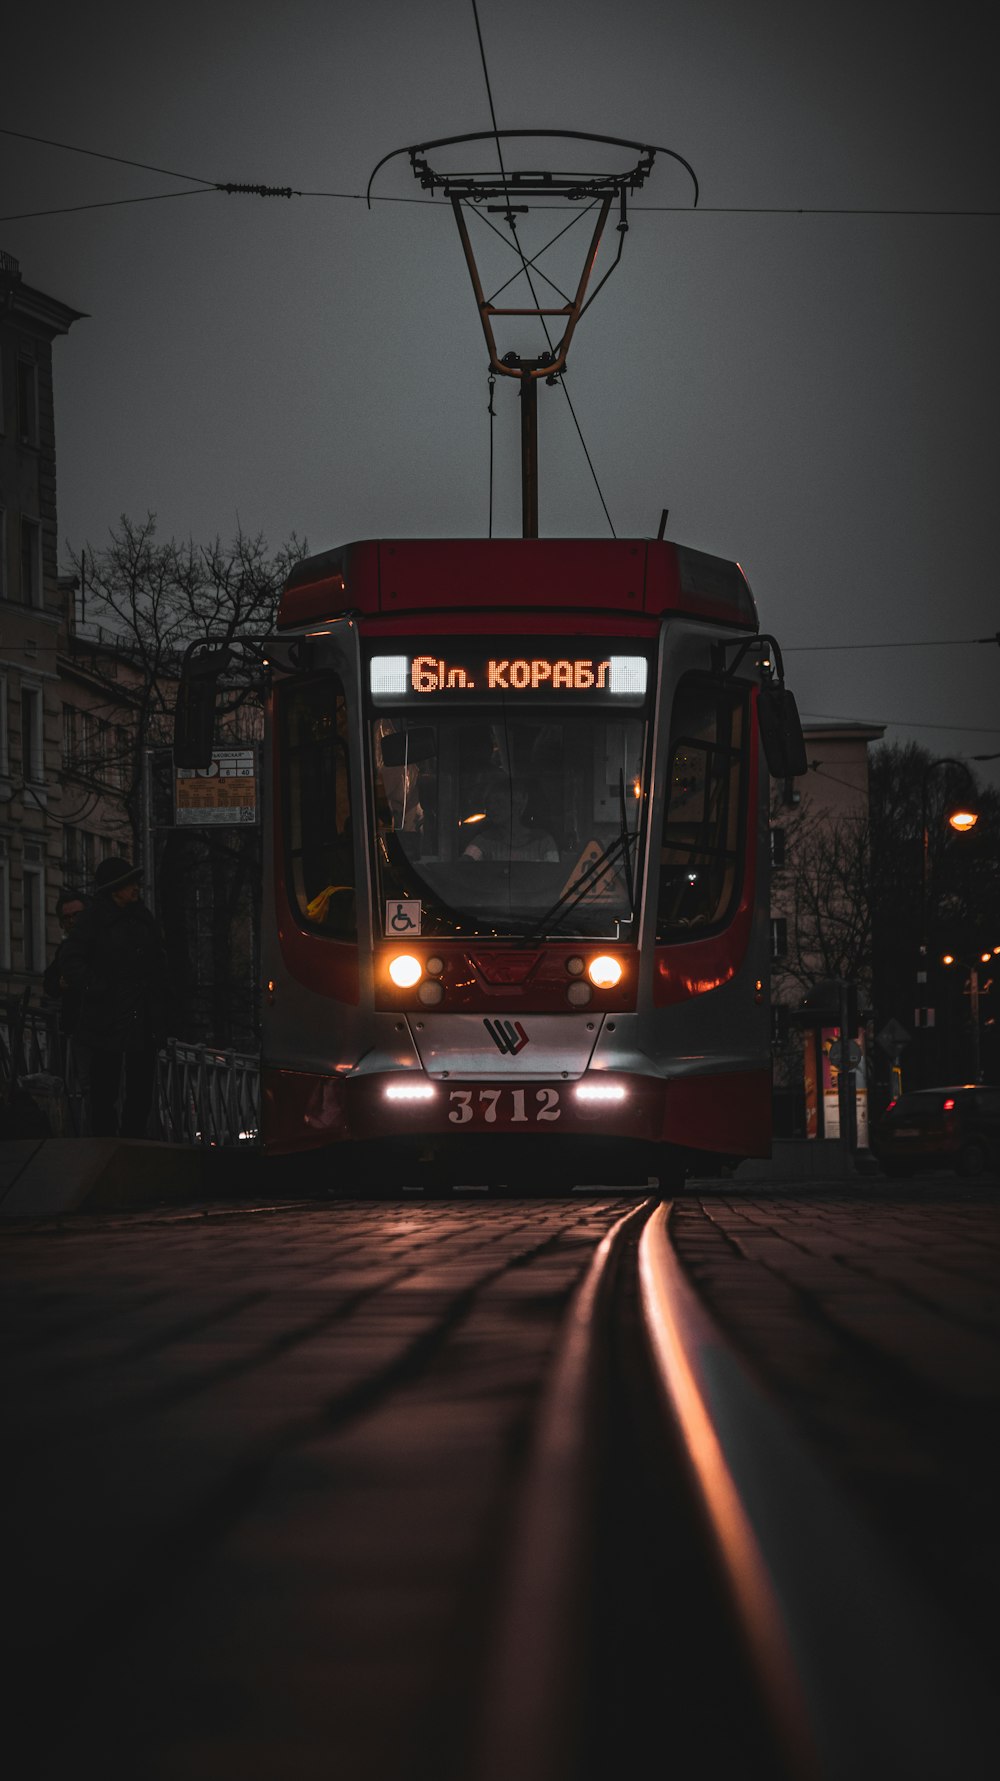 夜間の道路を走る赤と黒の路面電車